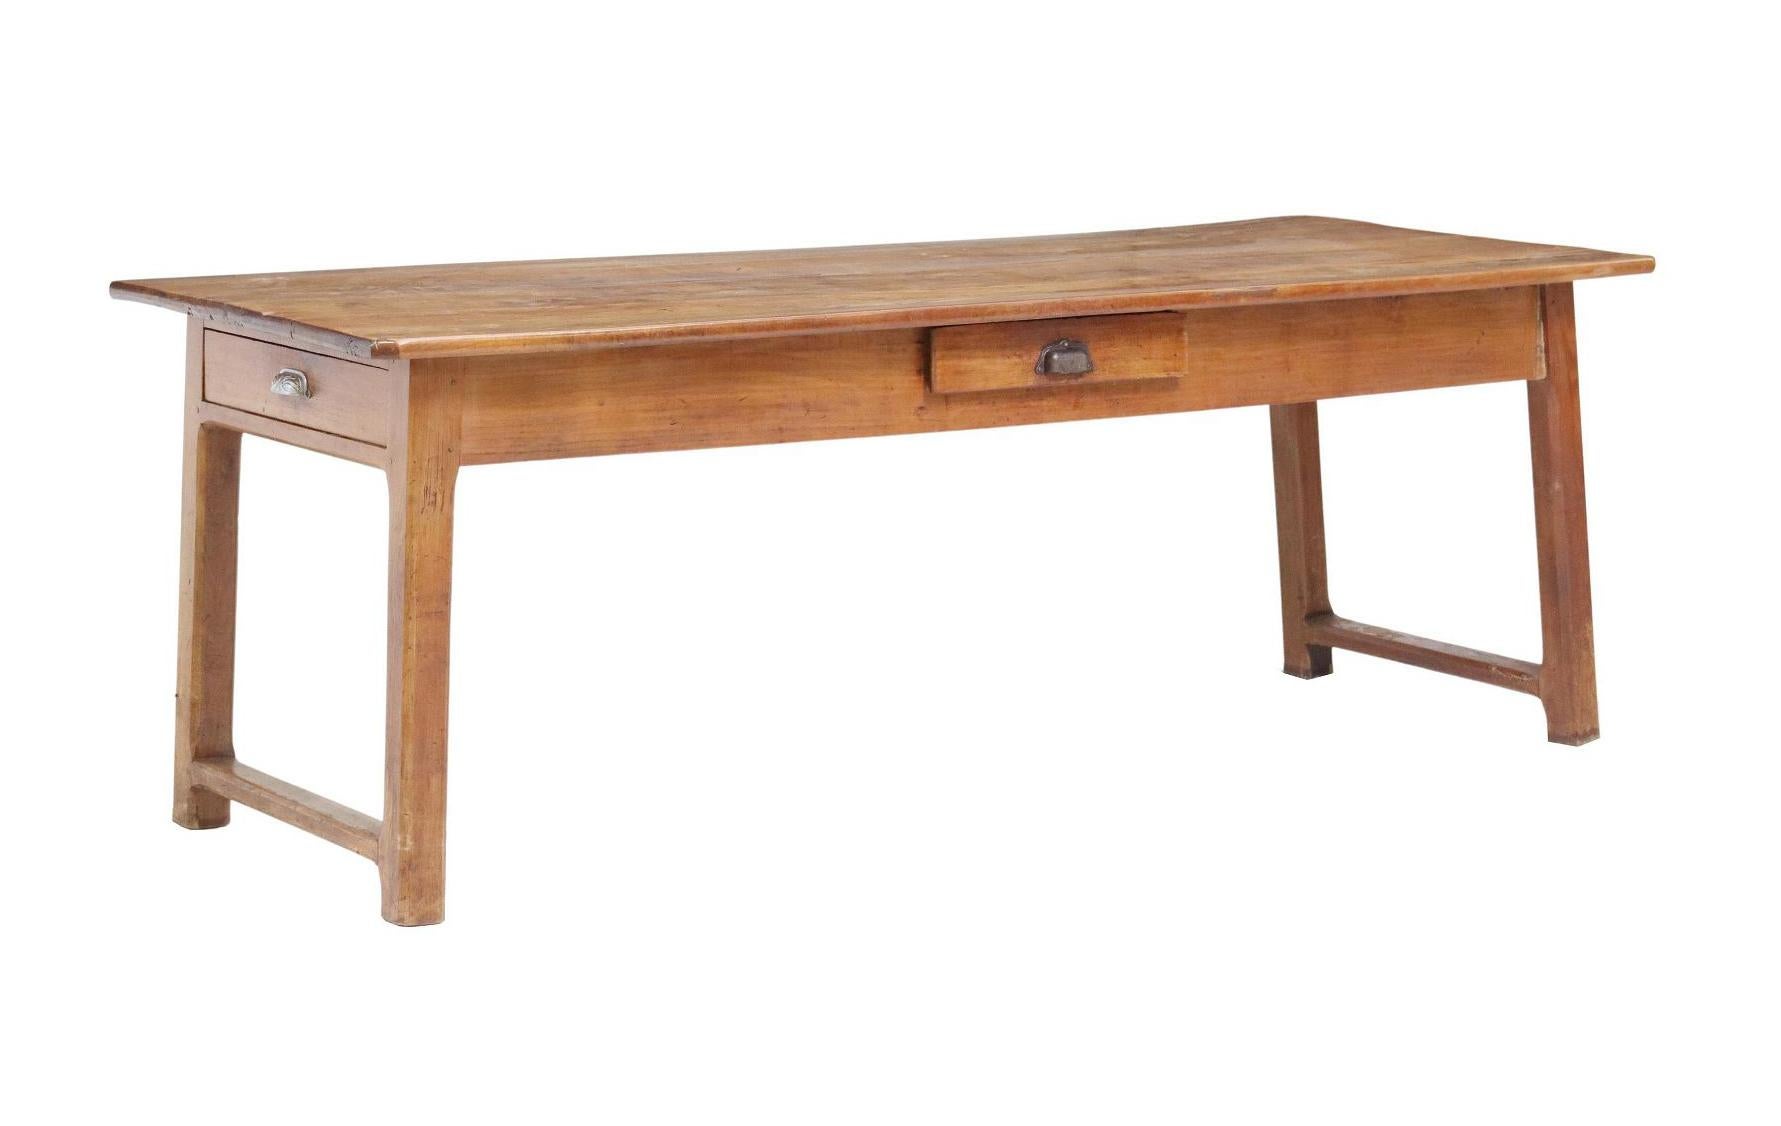 Ancienne table de ferme provinciale en bois fruitier, C.I.C.. Le plateau de table est composé de quatre planches. La table comporte deux tiroirs en frise, repose sur des pieds joints par étirement, une séparation et un remplissage entre les planches